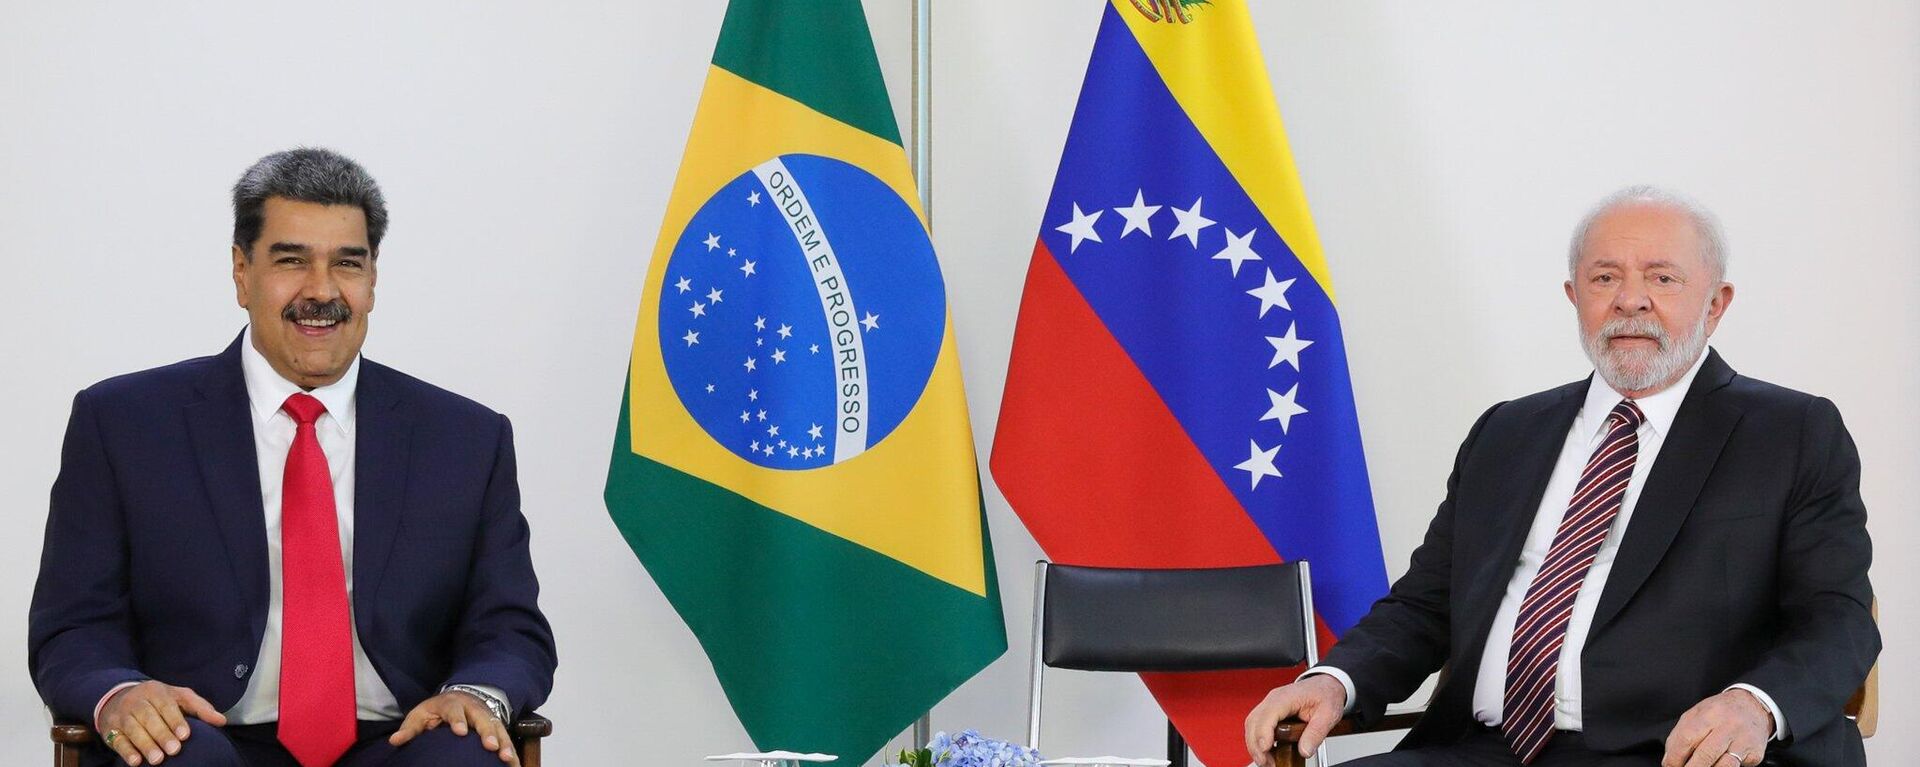 El presidente de Venezuela, Nicolás Maduro, y su homólogo brasileño, Lula da Silva, en una reunión el 29 de mayo de 2023 - Sputnik Mundo, 1920, 29.05.2023